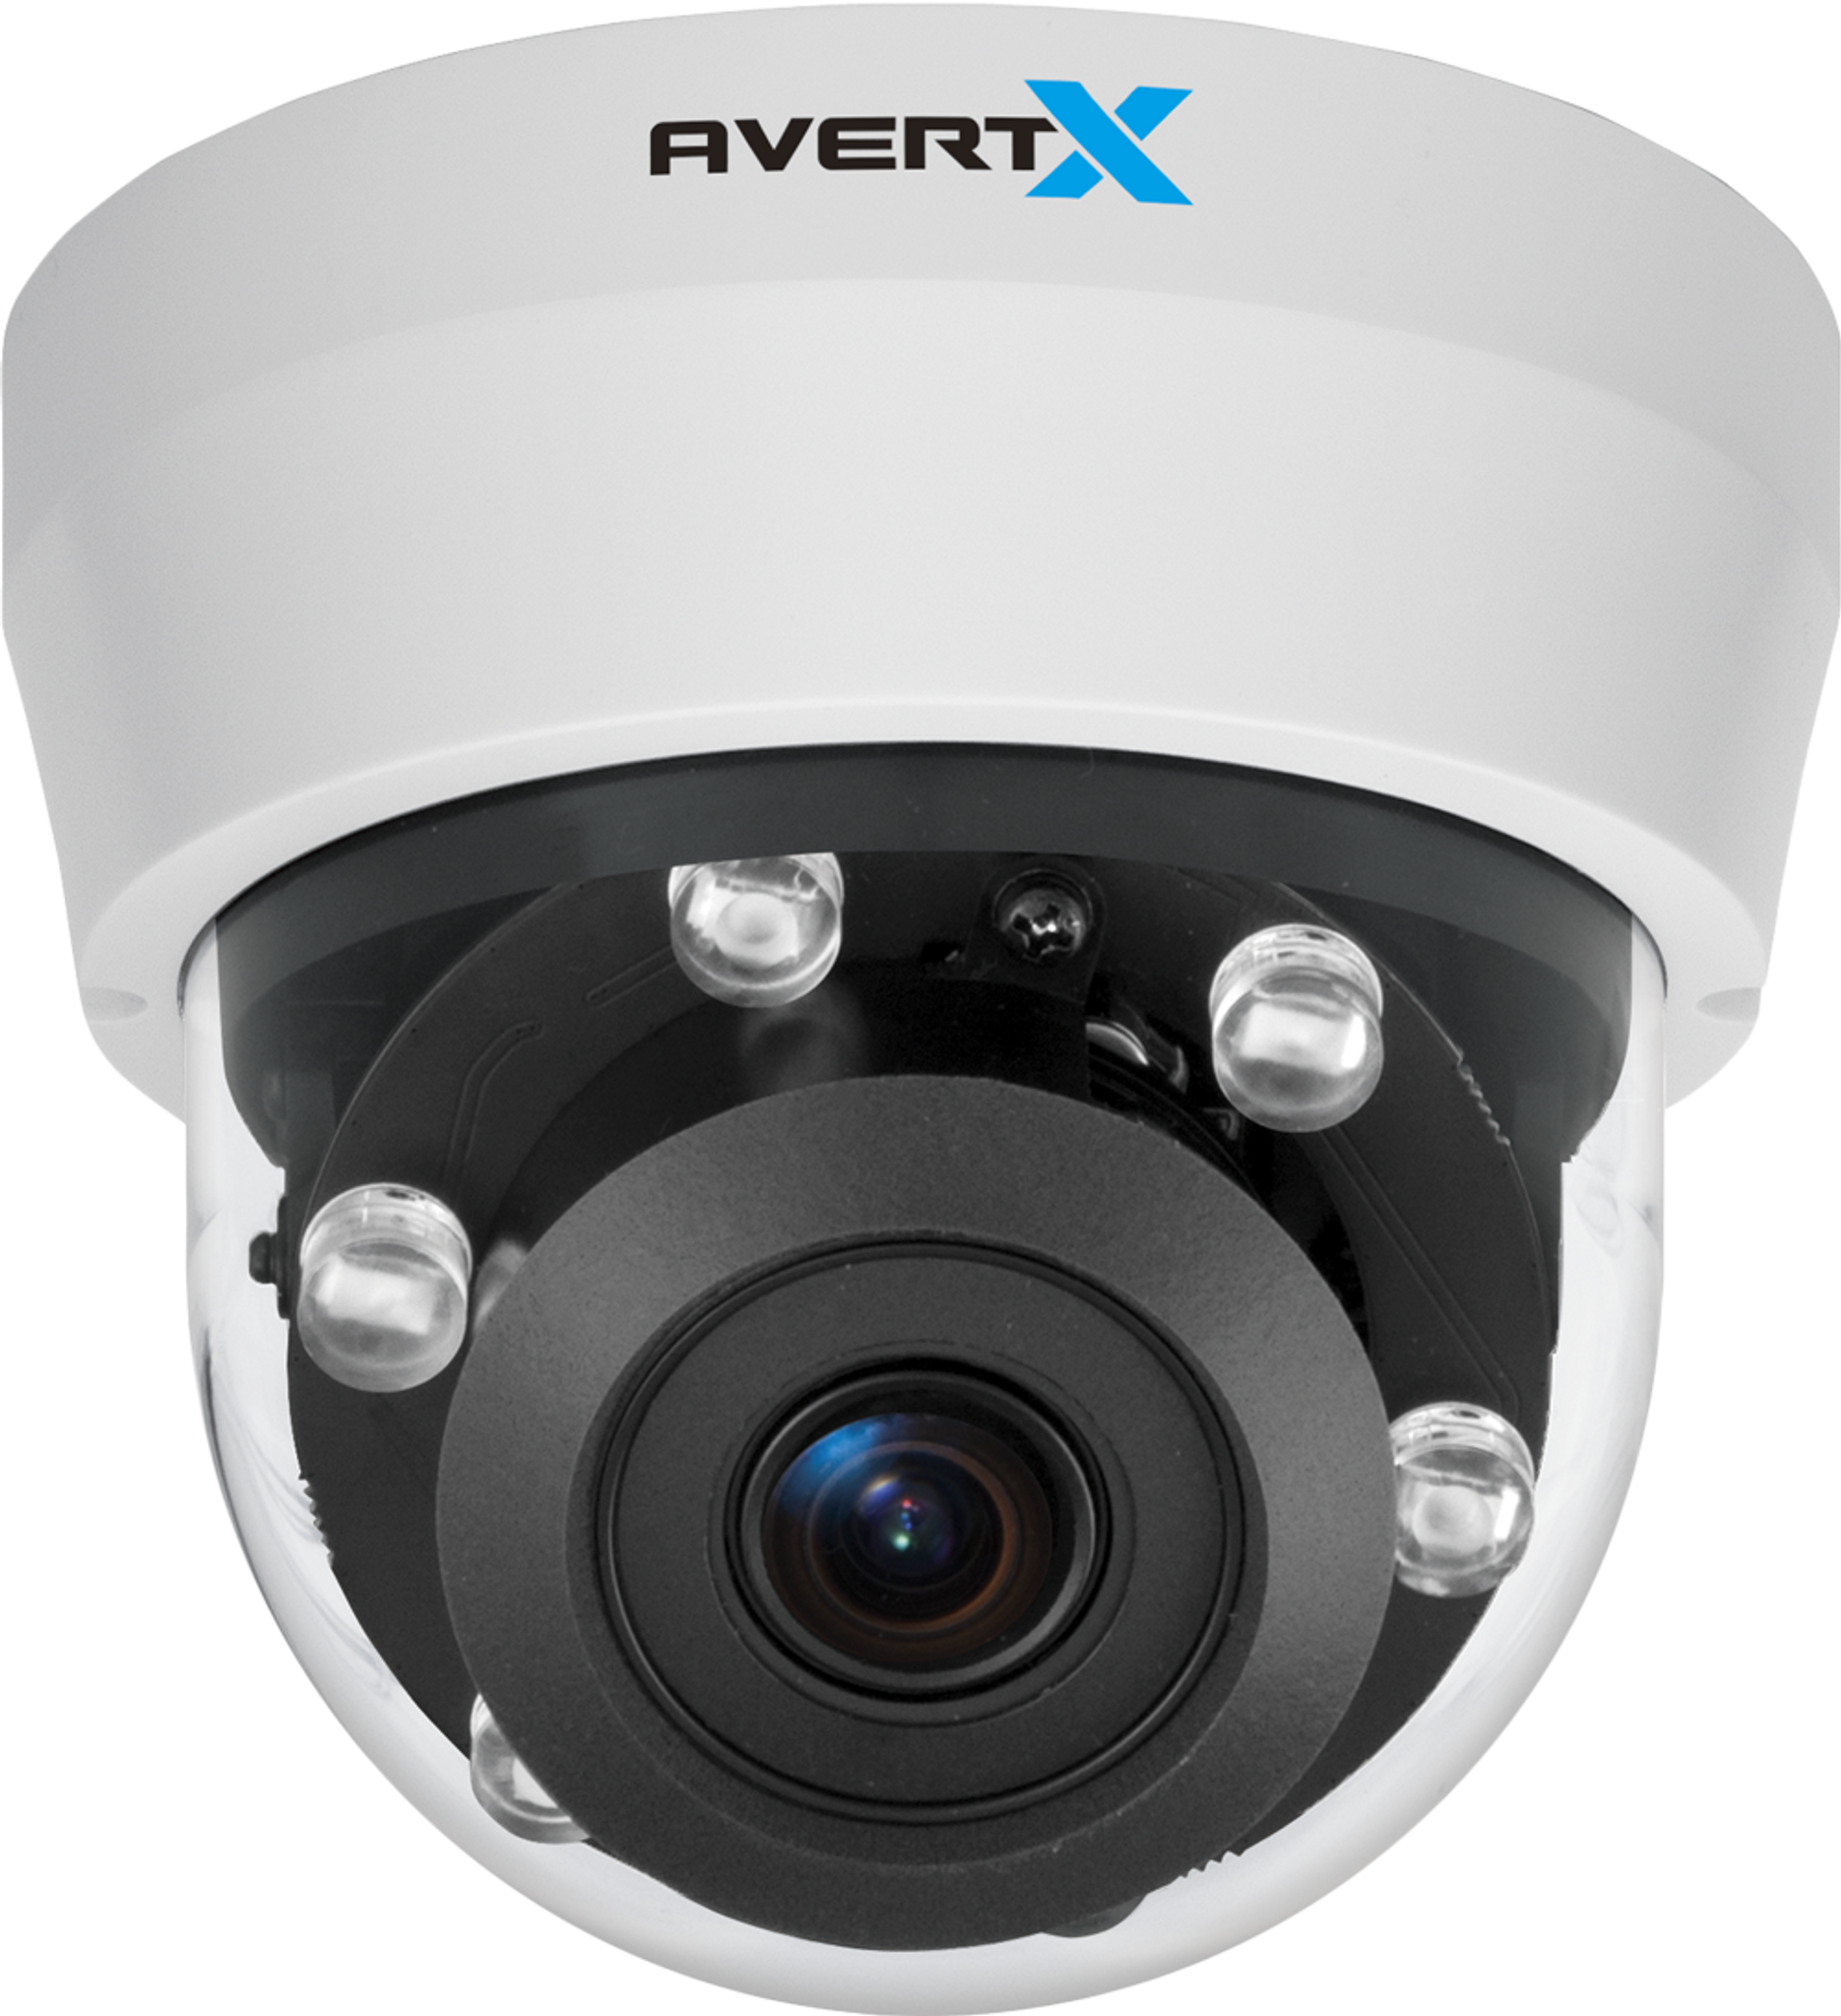 4MP HD Webcam w/ Autofocus - 1080p, 30fps